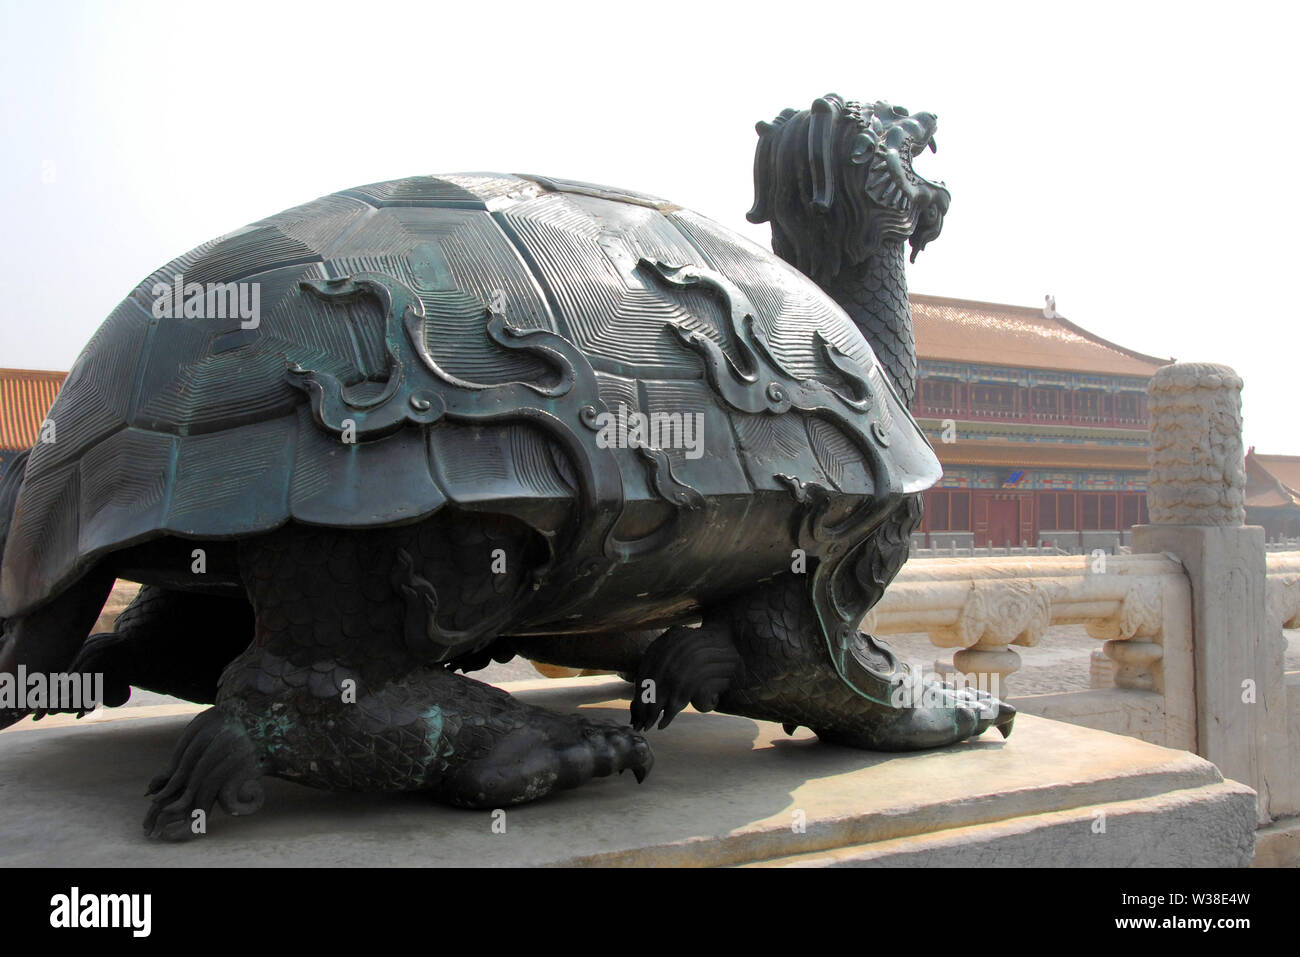 La città proibita a Pechino, Cina. Statua di bronzo di una tartaruga dentro la Città Proibita. La Città Proibita è tradizionale architettura cinese. UNESCO. Foto Stock